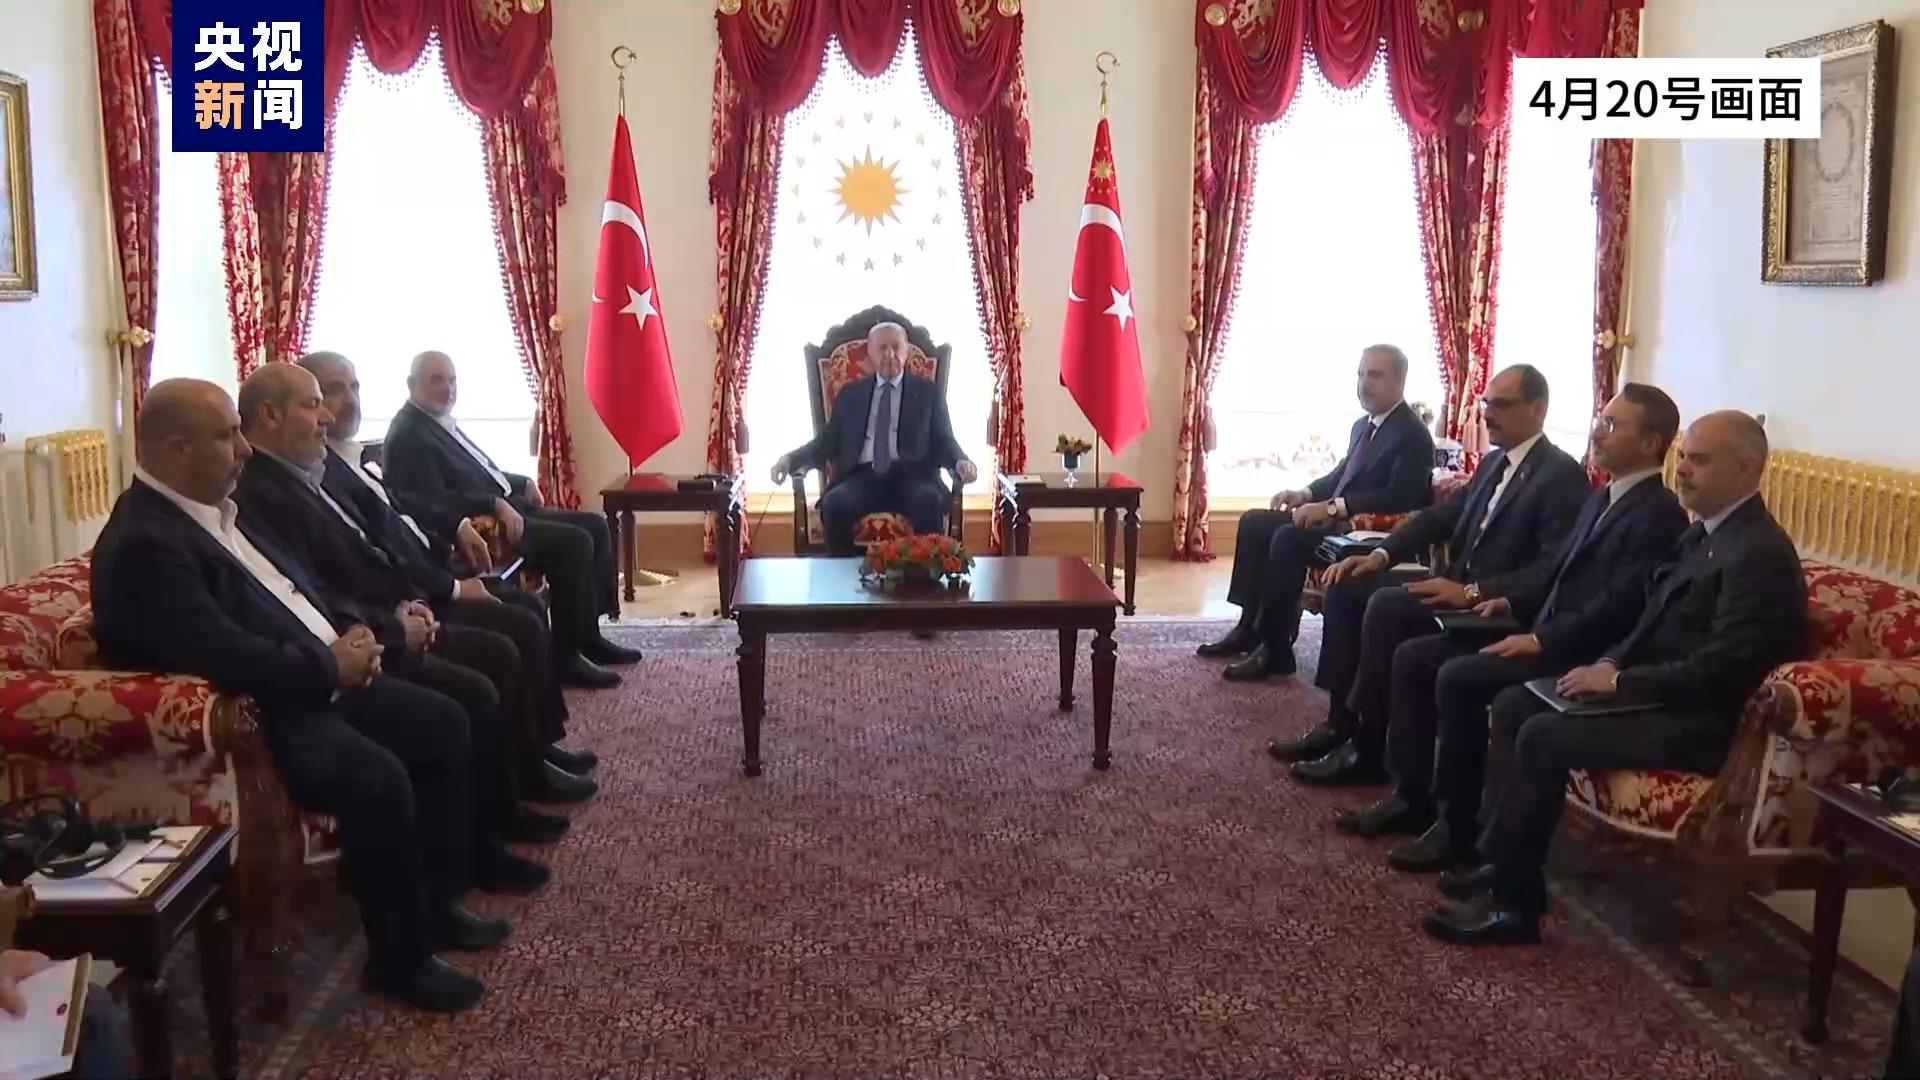 哈马斯领导人访问土耳其 向外界传递这三个关键词